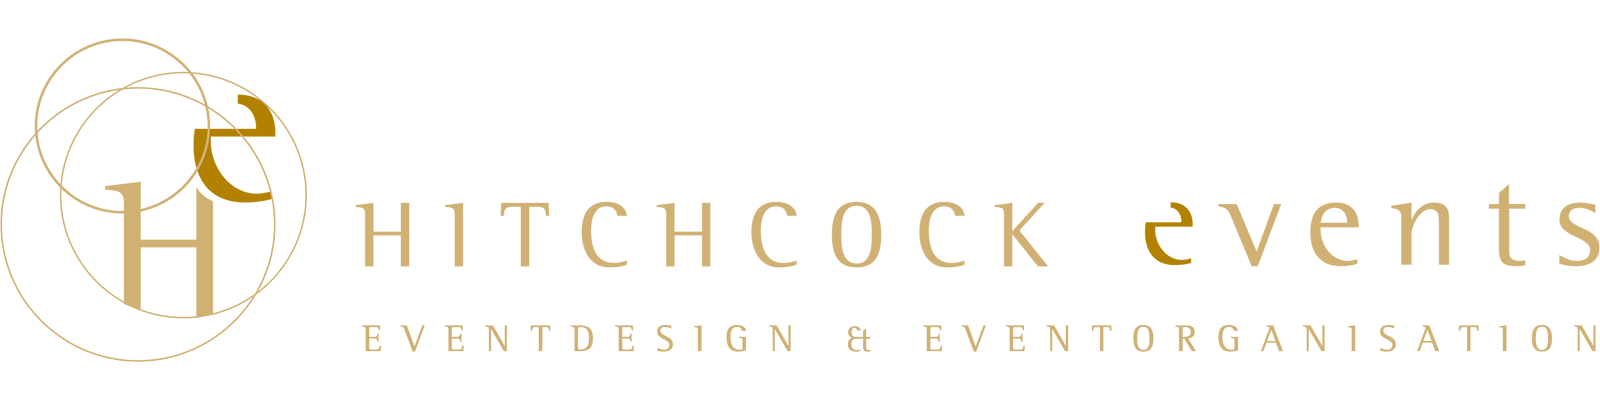 Hitchcock Events Creative & Comprehensive Event Manangement